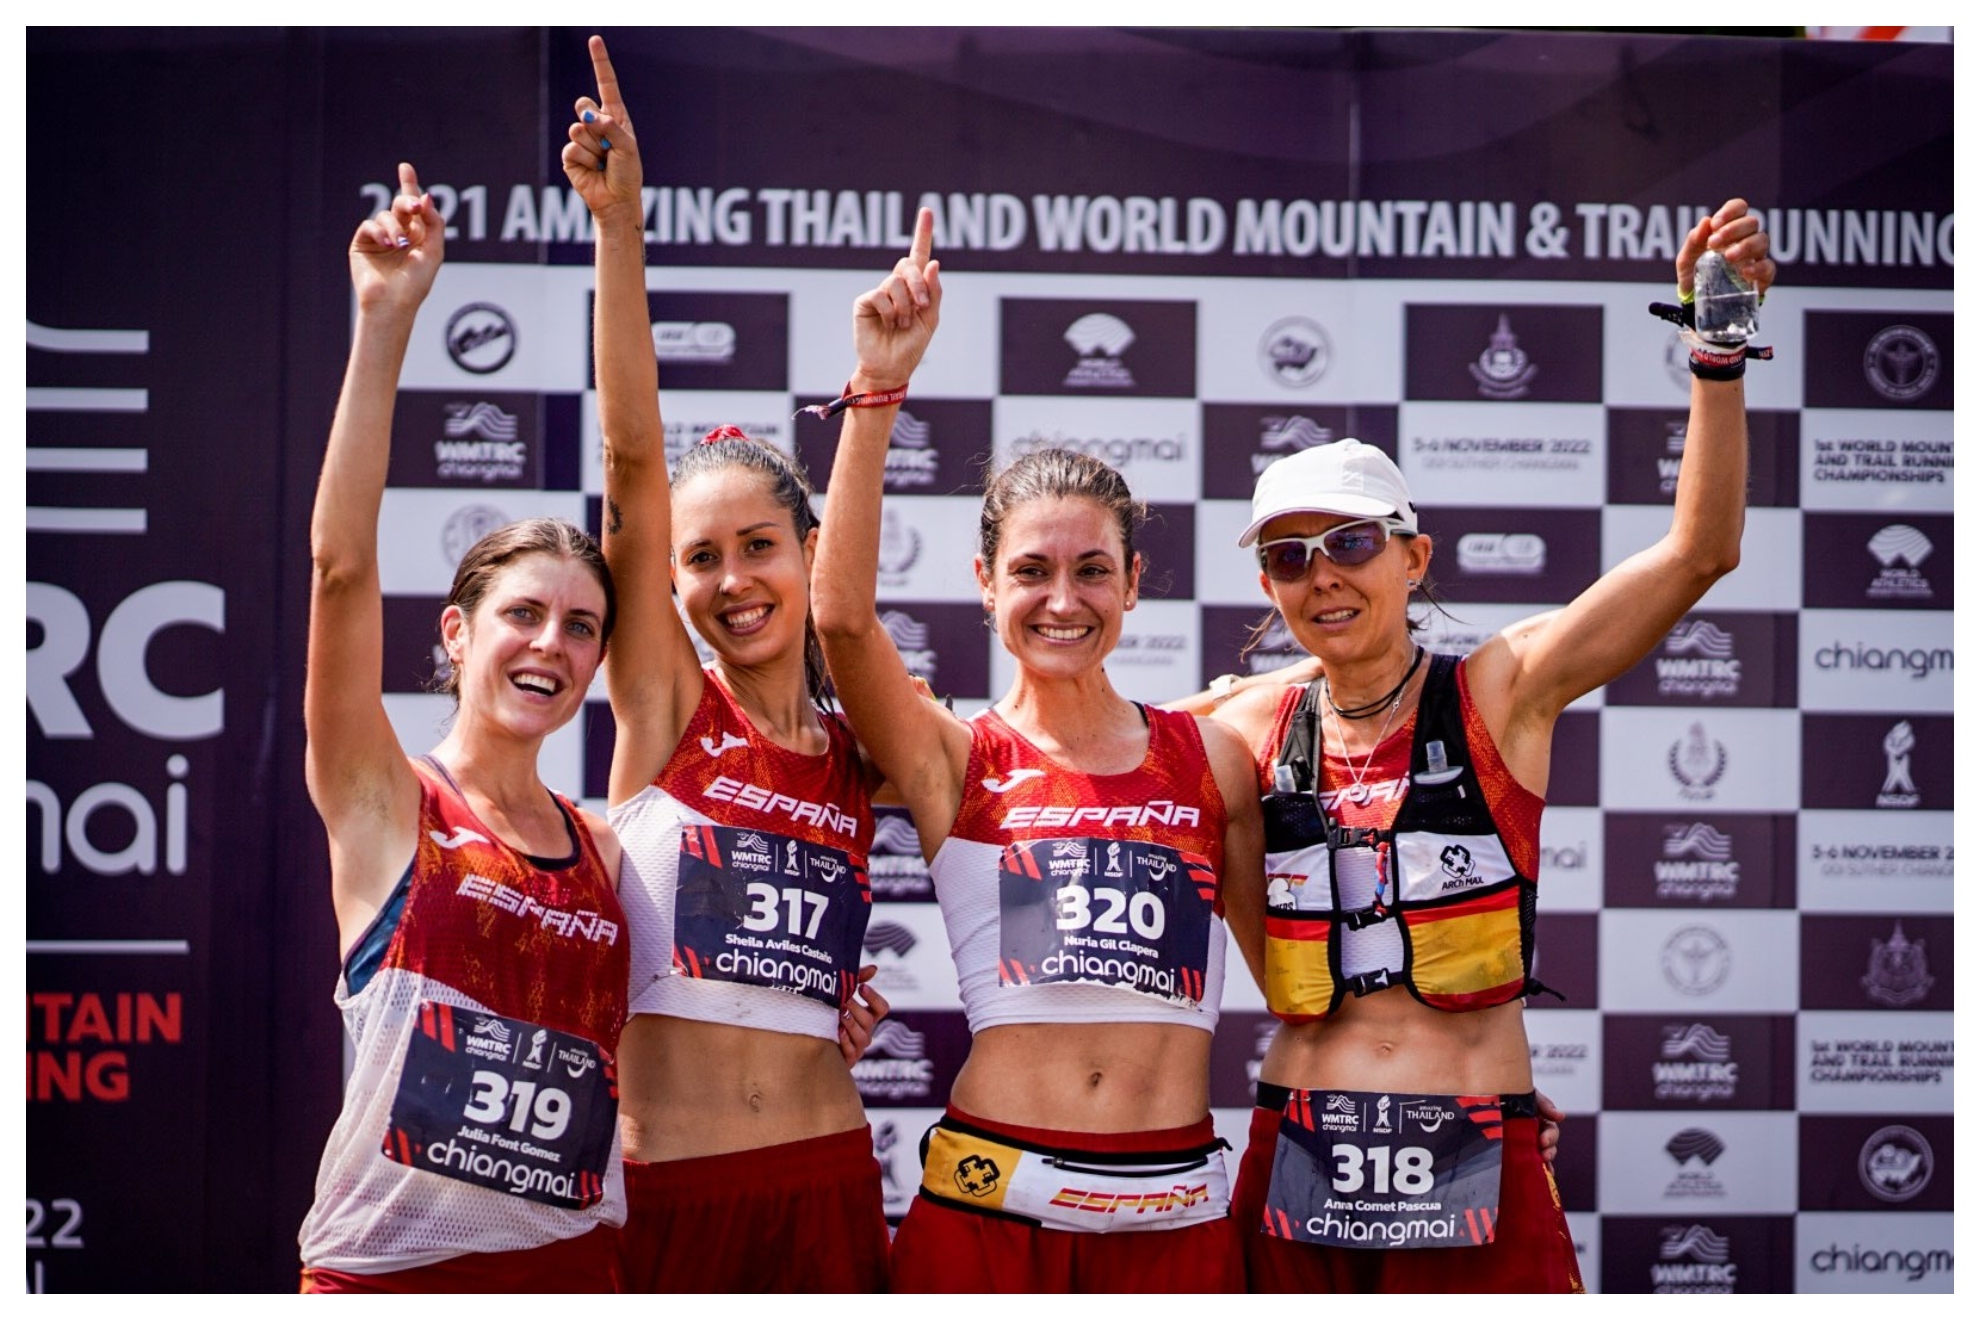 El equipo femenino de Trail Running que ha ganado el oro.